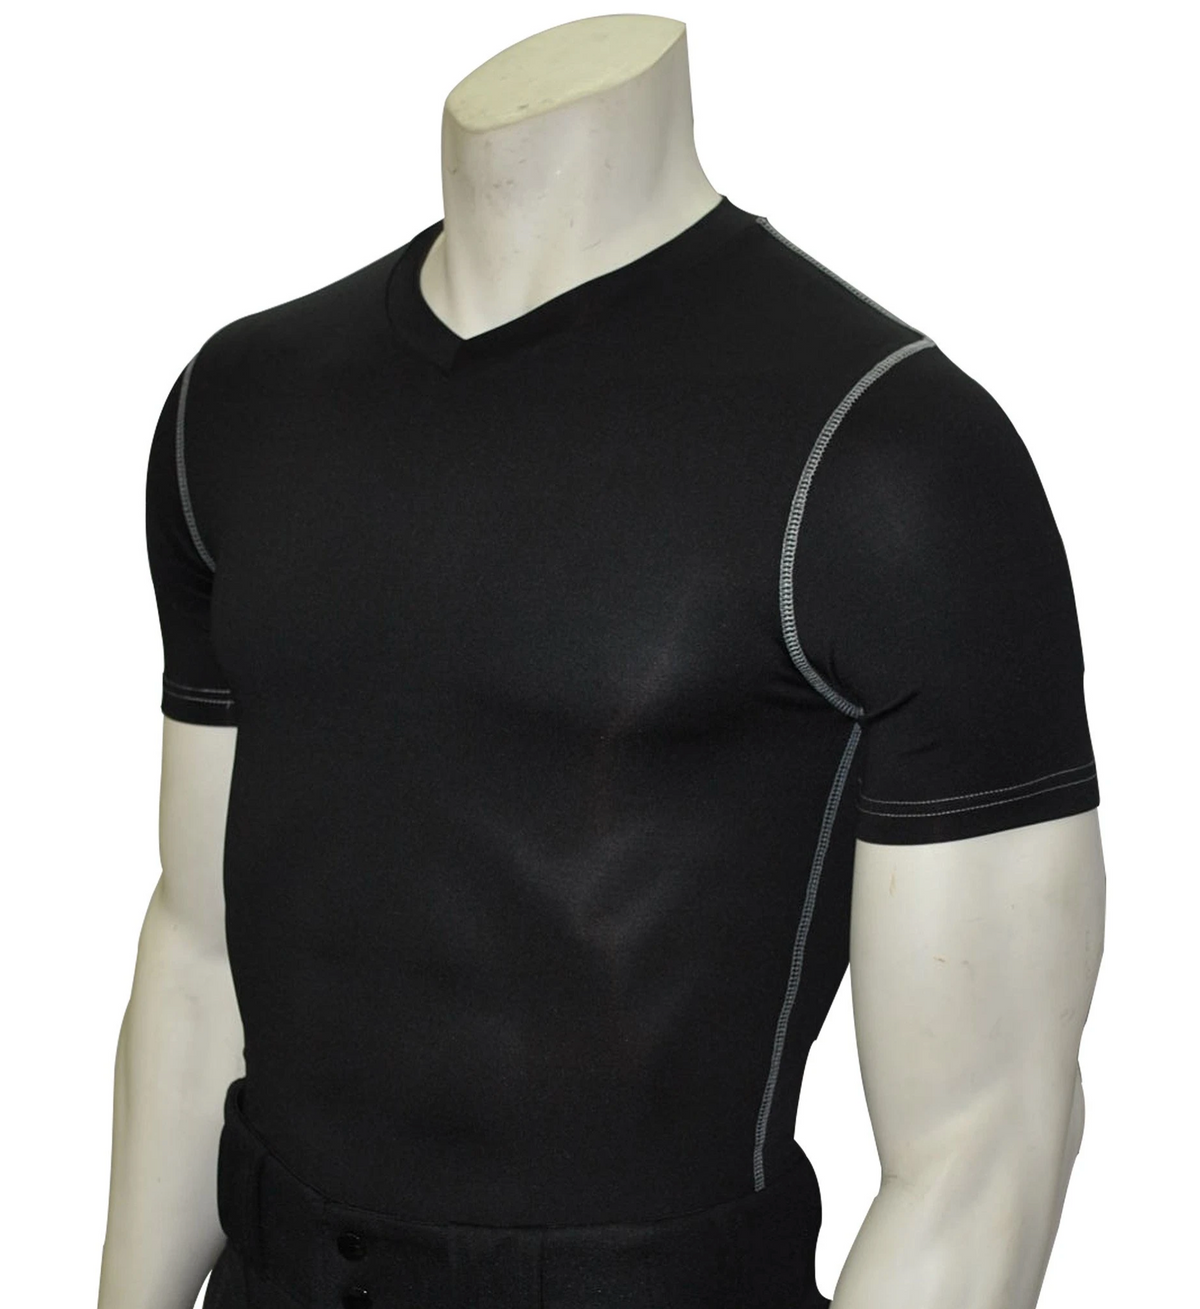 Smitty | BKS-411 | Black | Compression Short Sleeve V- Neck Shirt | Polyester